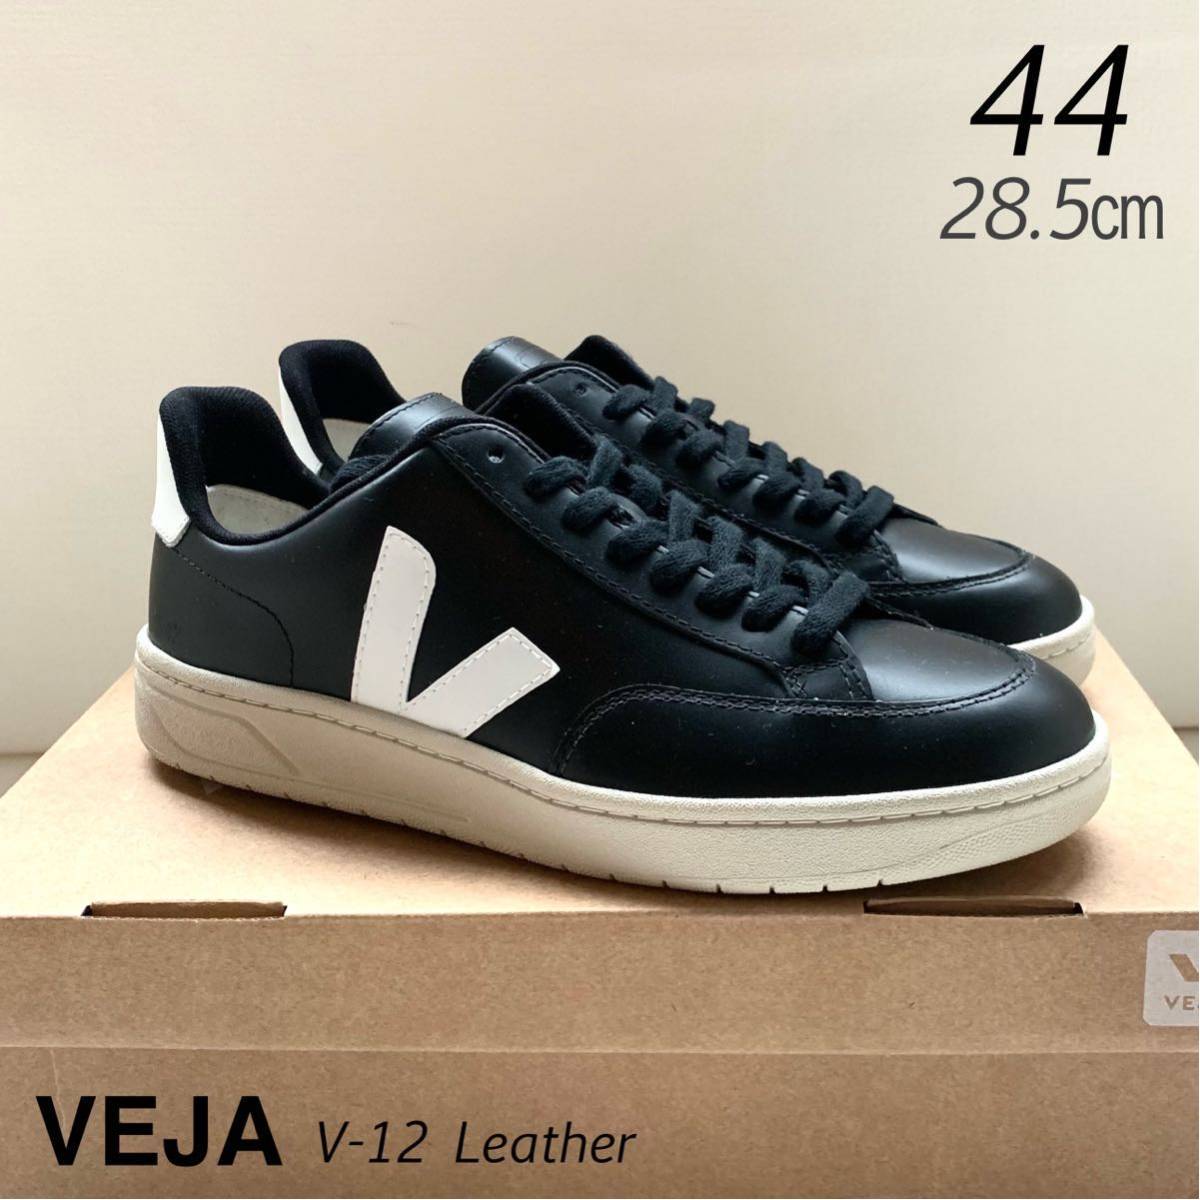 新品 VEJA ヴェジャ V-12 Leather レザー スニーカー 44 メンズ 黒 ブラック 白 ホワイト 28.5㎝ 定番 V12 送料無料